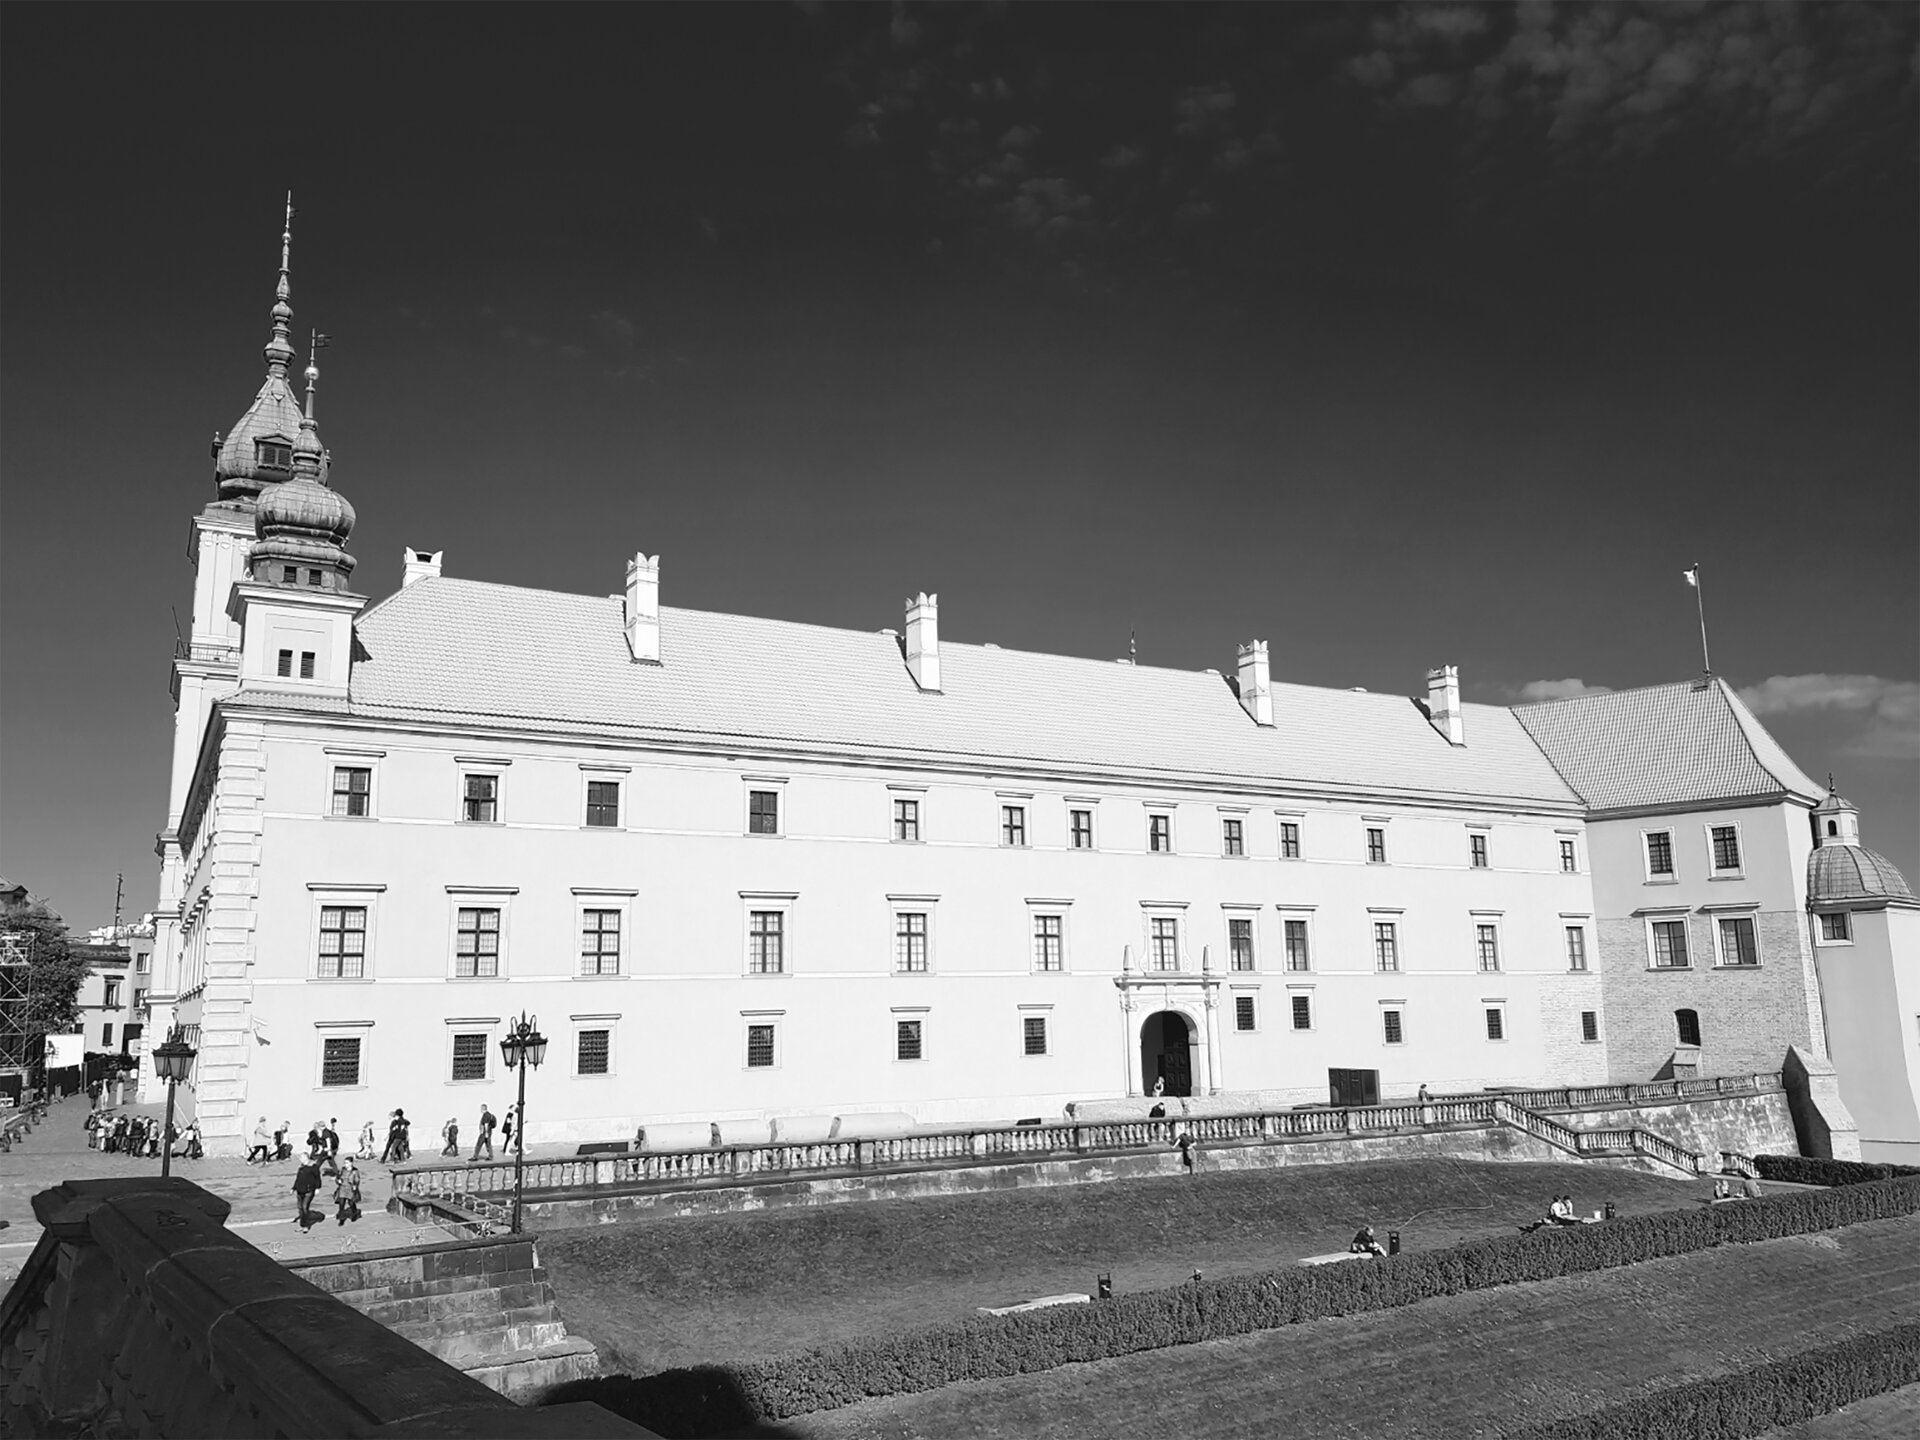 Zdjęcie czarno‑białe przedstawiający zamek, którego ściany są białe, szarym oznaczone są okna i ich krawędzie, dach ciemniejszy jest od ścian. Niemal całkowicie czarne niebo oraz ciemnoszara trawa.